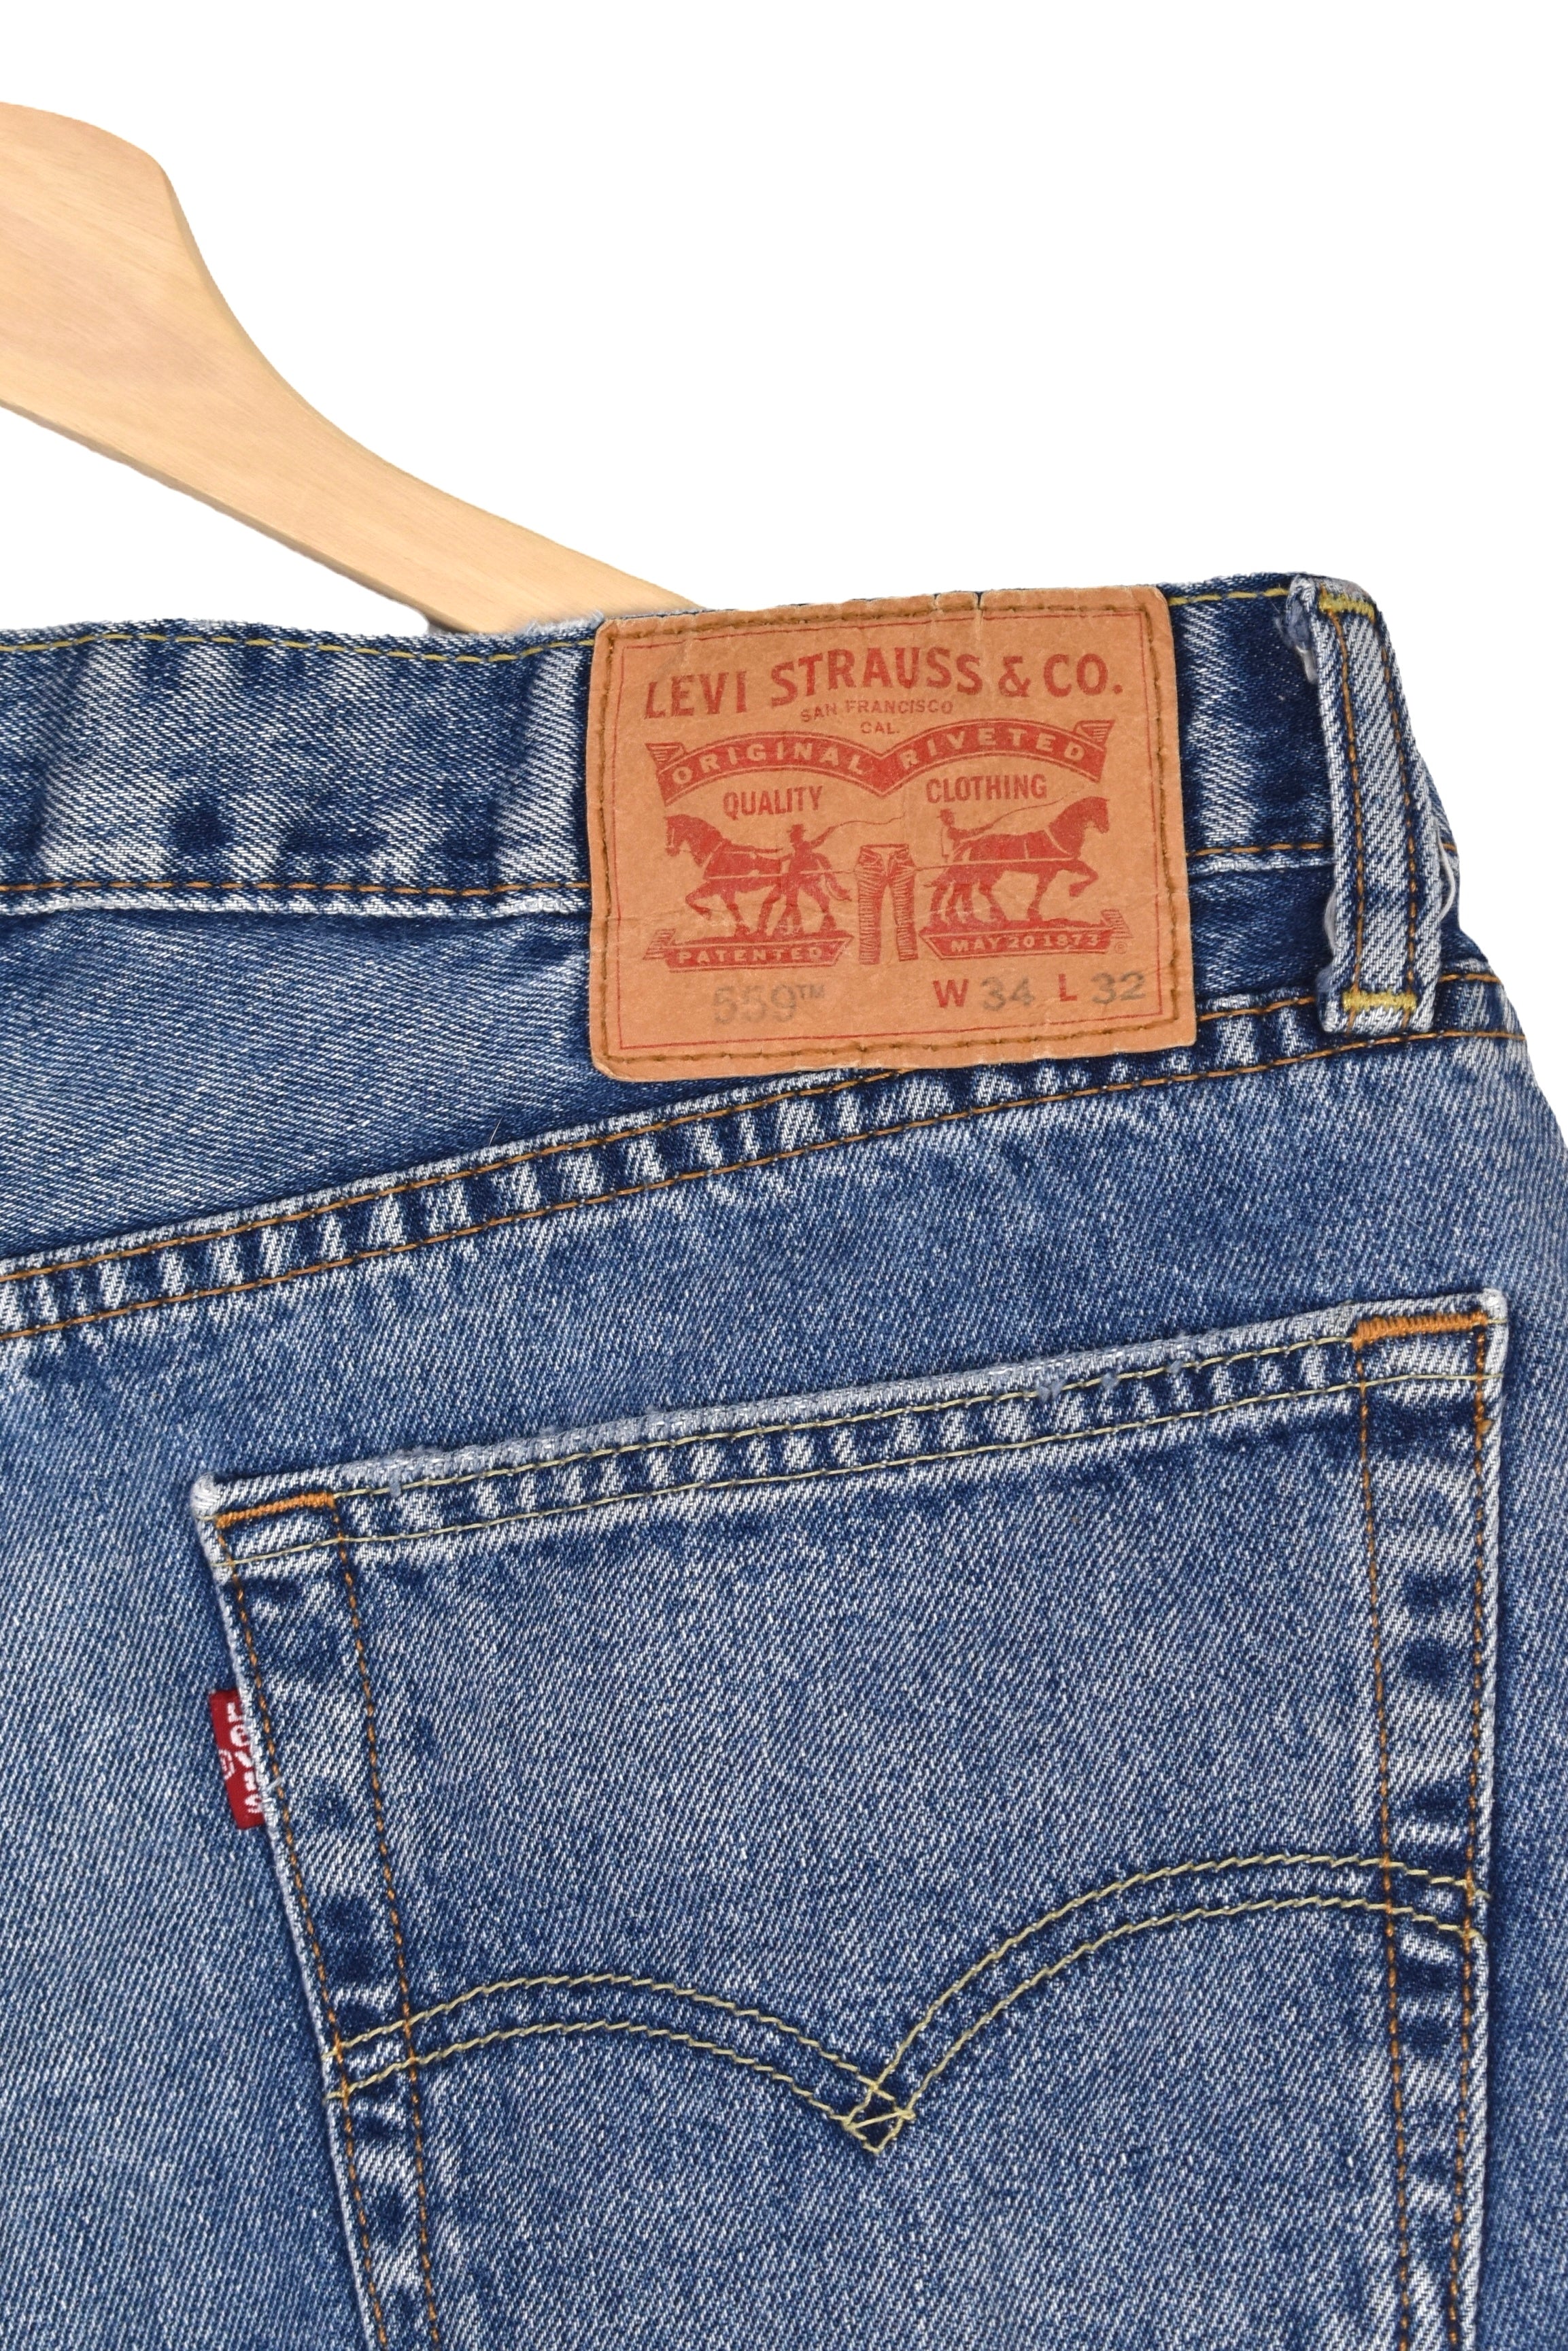 Women's vintage Levi's shorts (W34), blue rework denim jeans